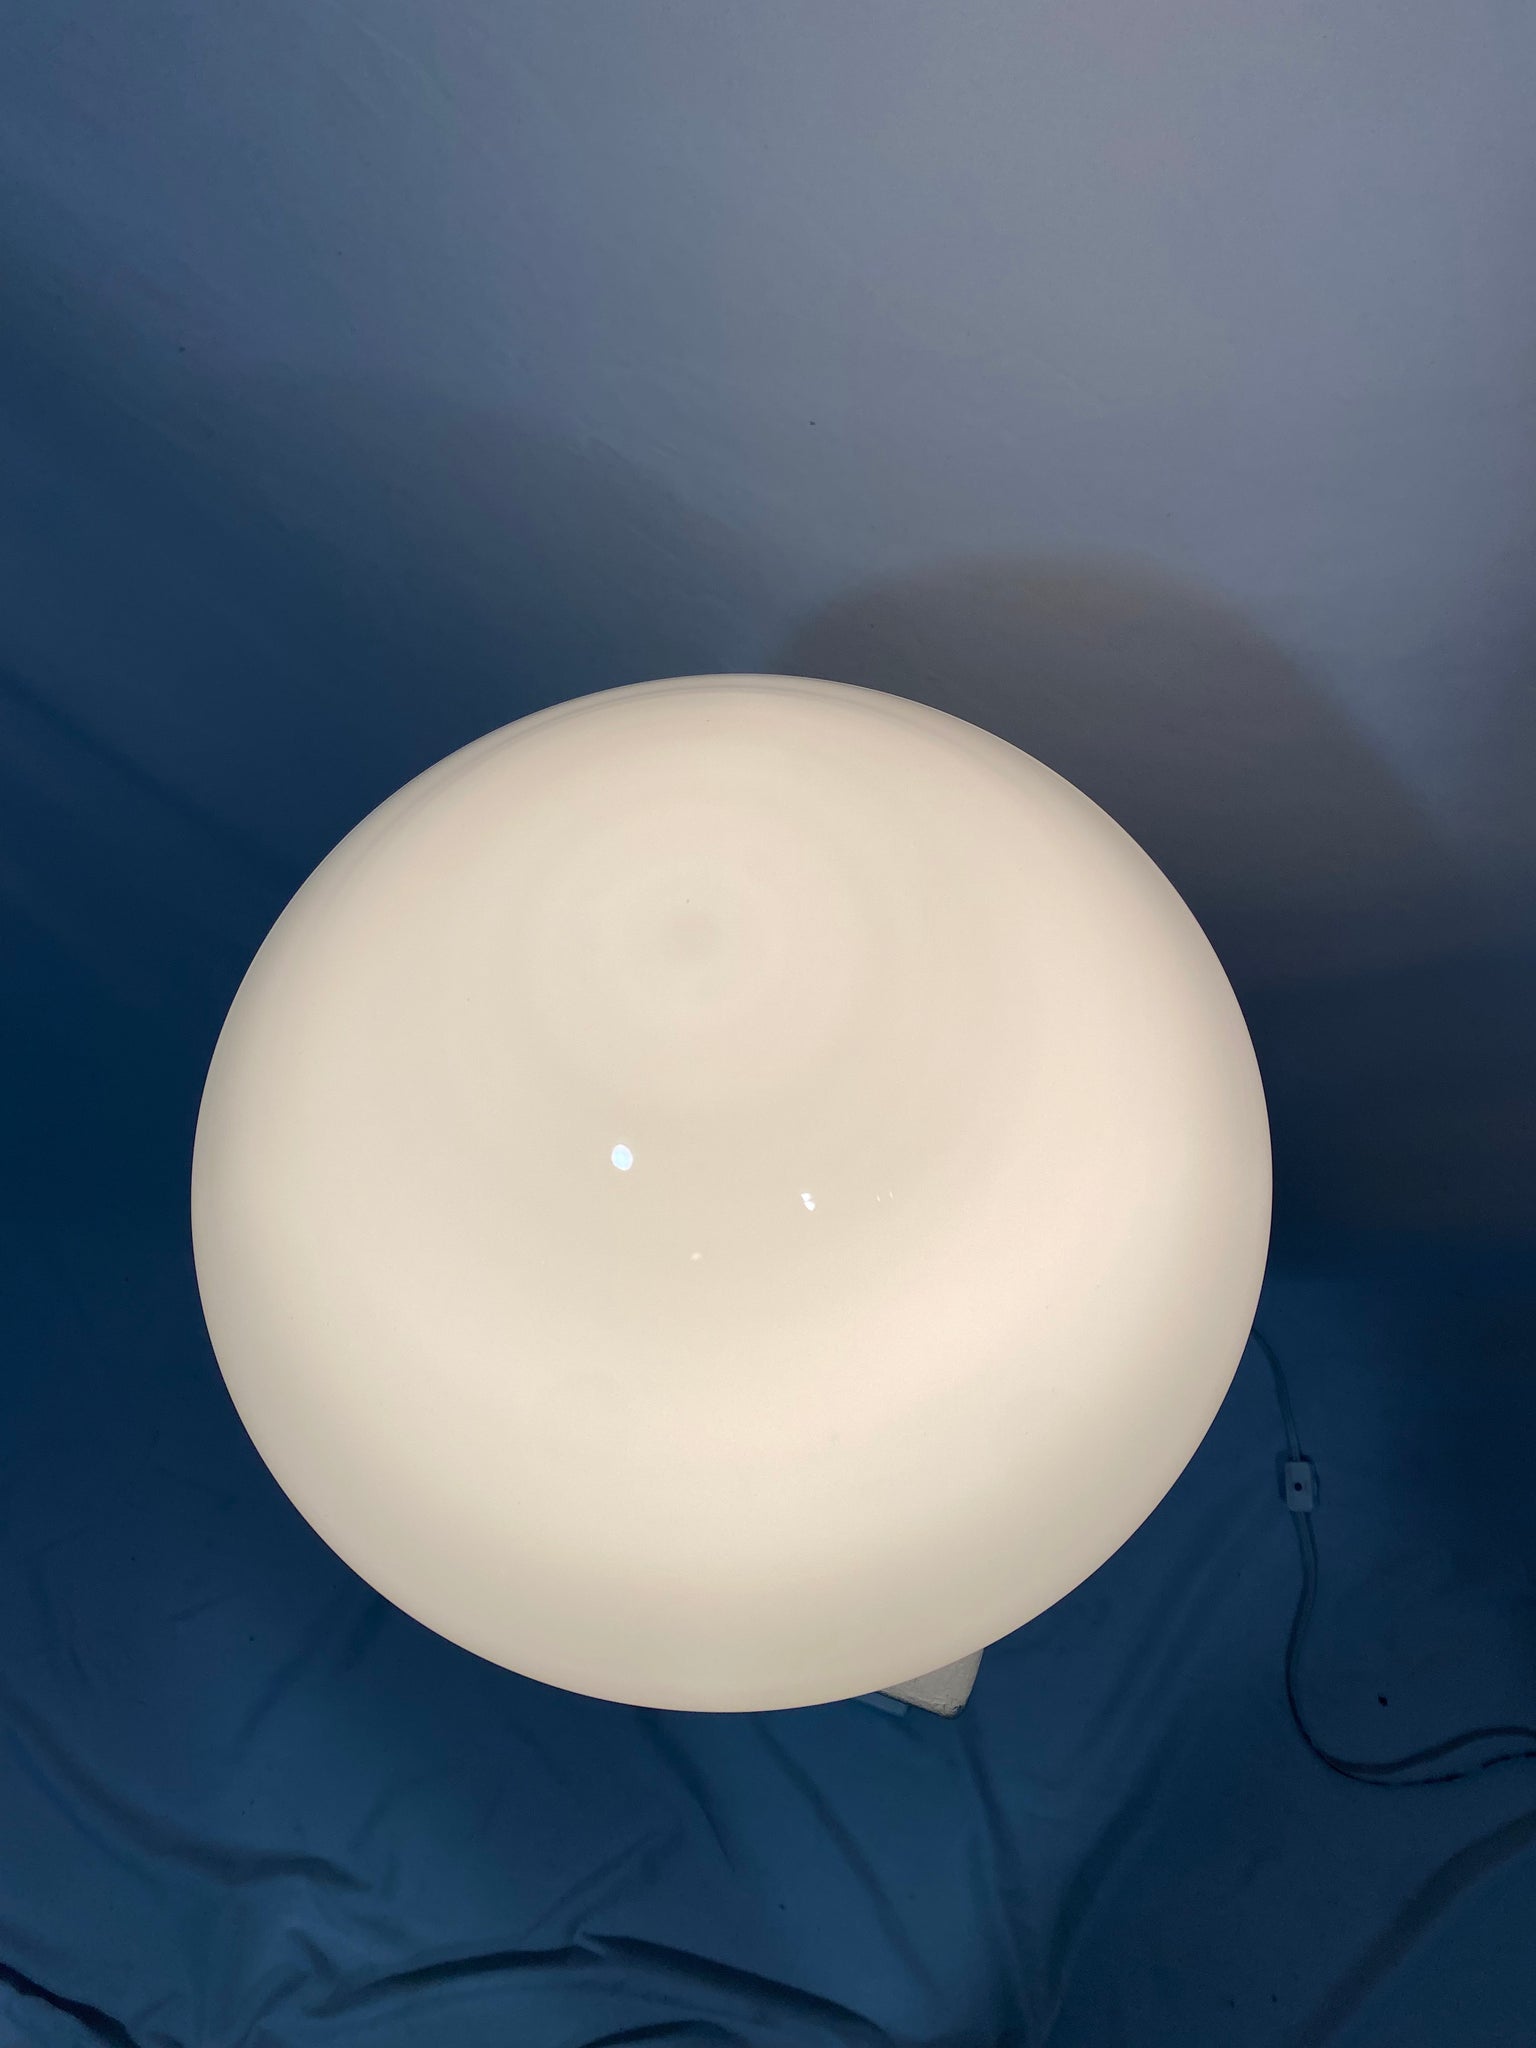 Medium white closed-top Murano glass mushroom lamp